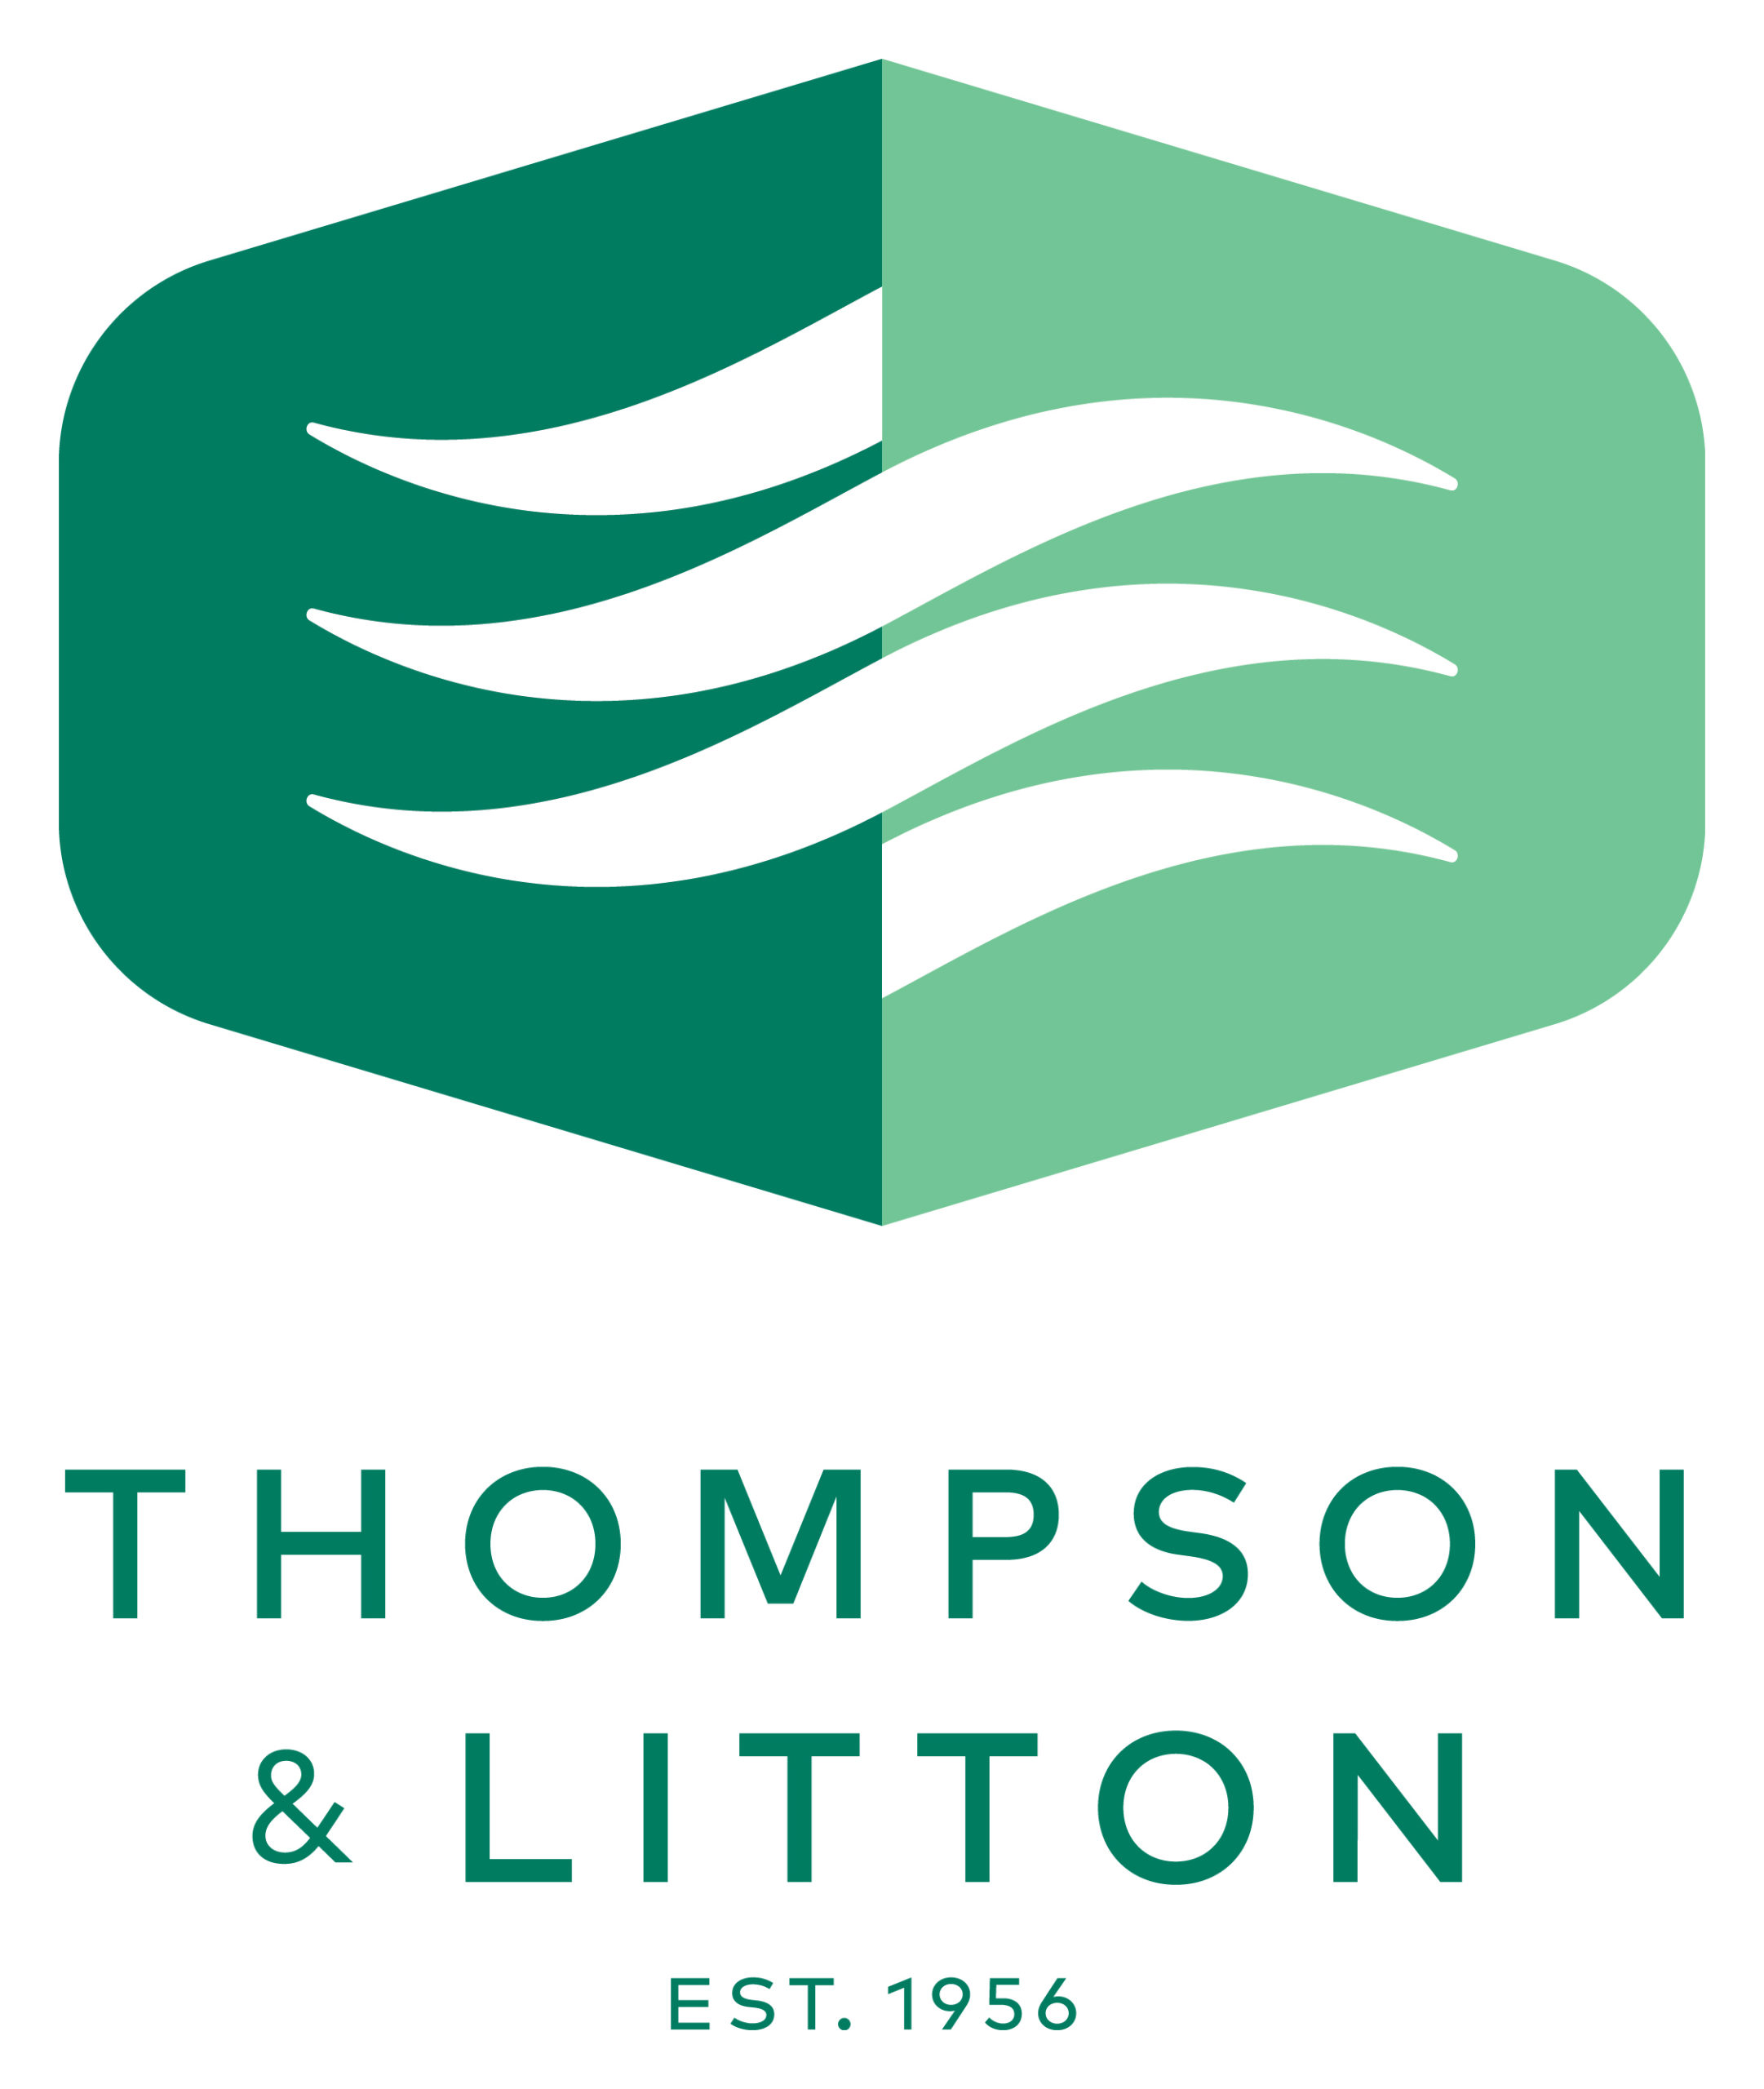 Thompson & Litton